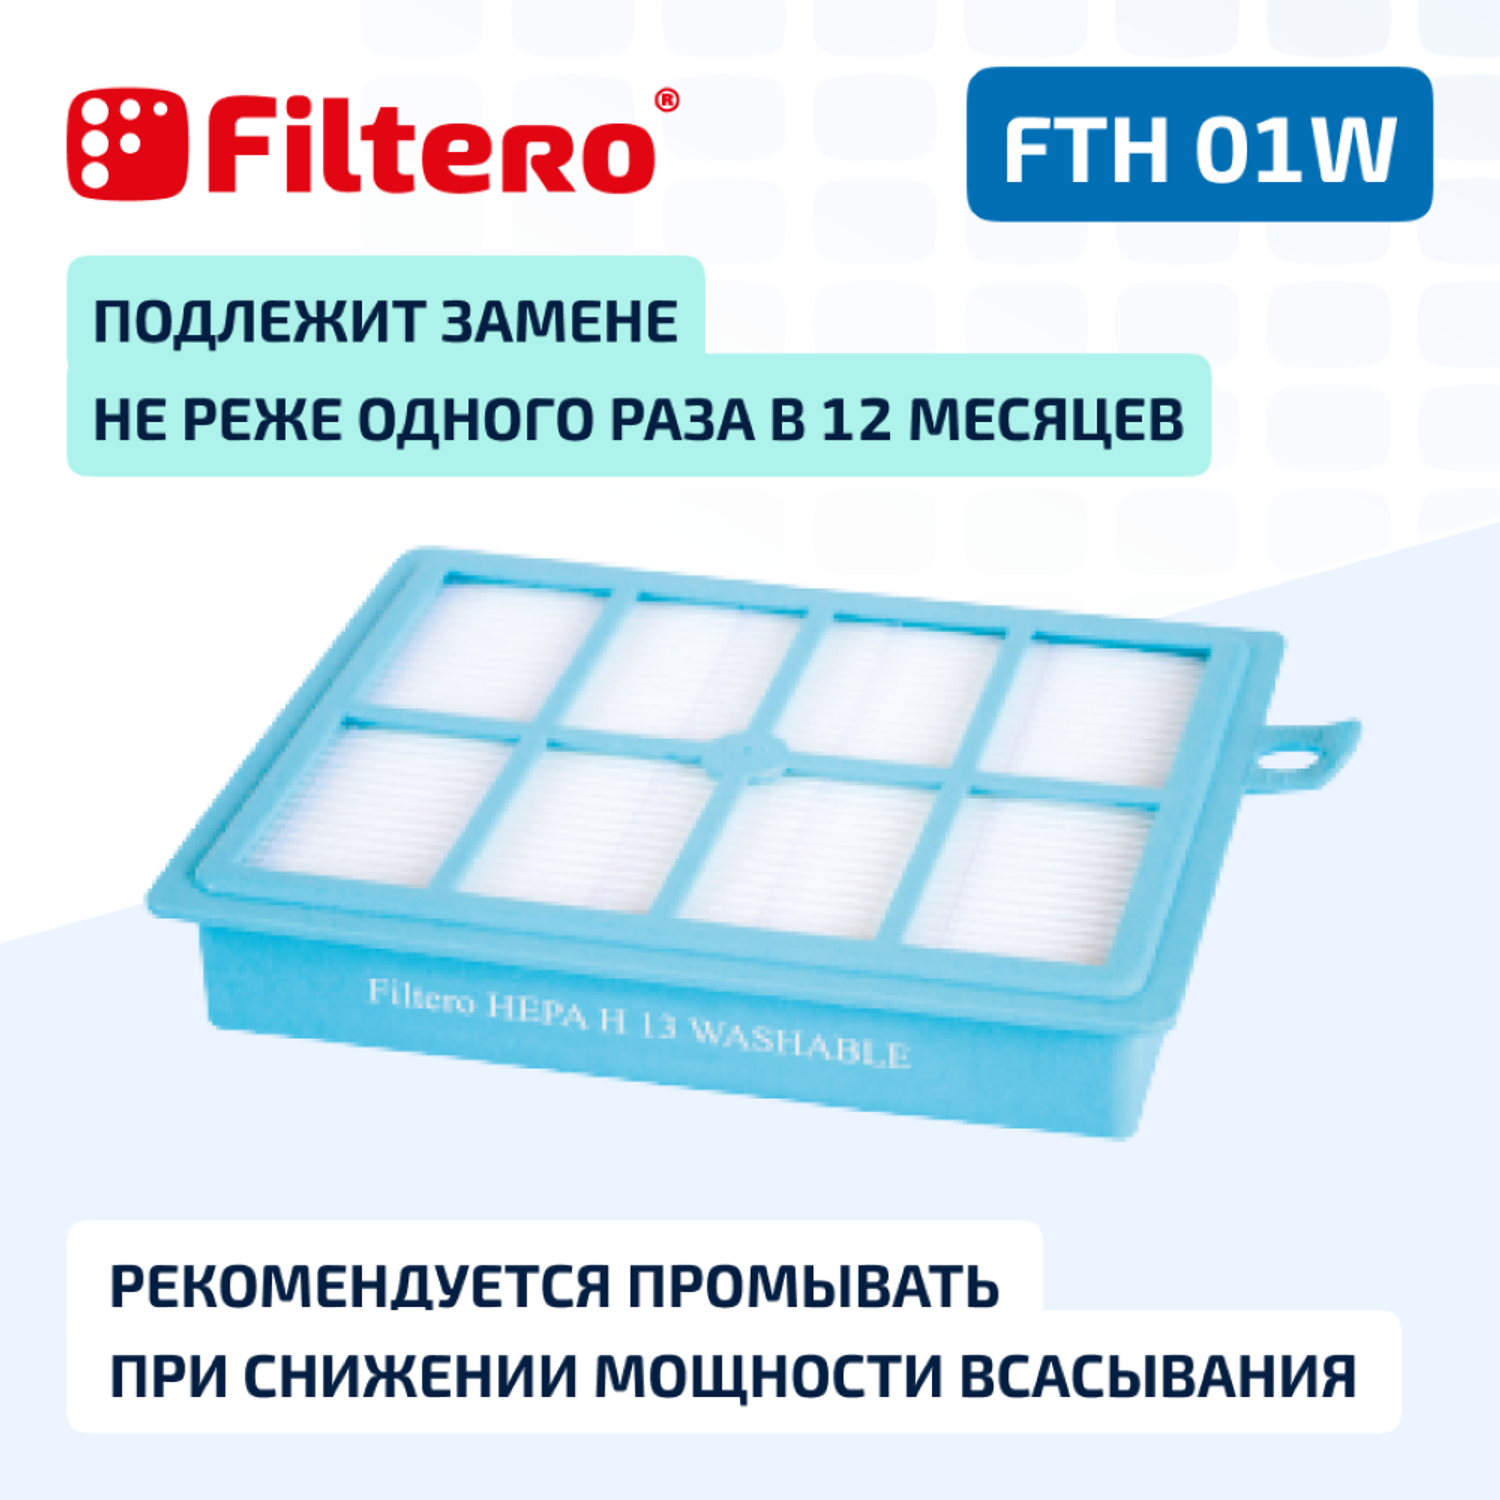 Фильтр HEPA Filtero для пылесосов Electrolux и Philips FTH 01 W Elx моющийся - фото 3